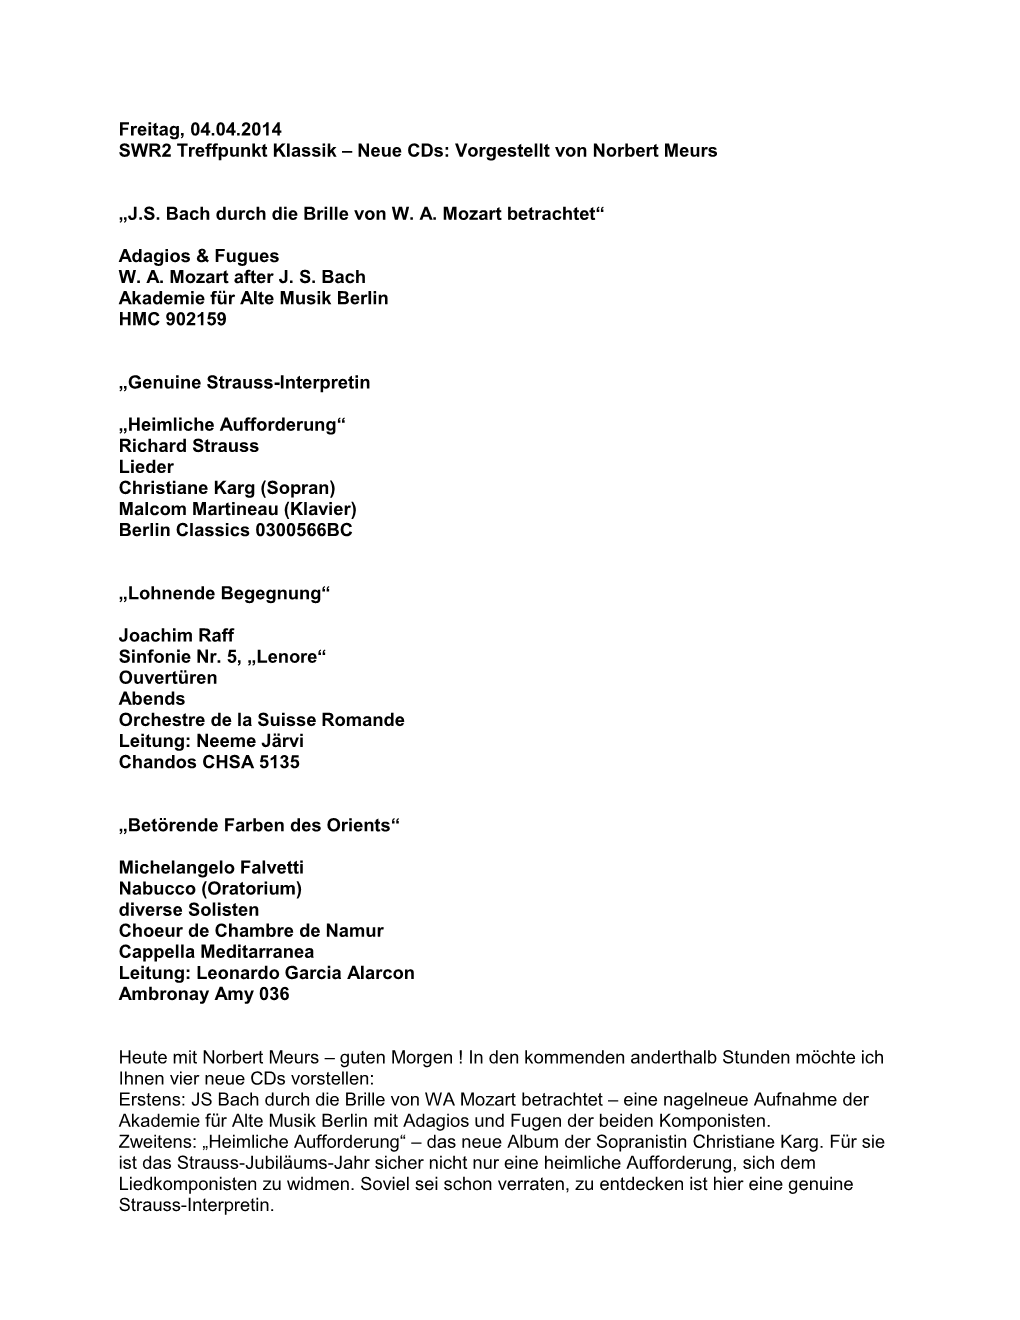 JS Bach Durch Die Brille Von WA Mozart Betrachtet – Eine Nagelneue Aufnahme Der Akademie Für Alte Musik Berlin Mit Adagios Und Fugen Der Beiden Komponisten